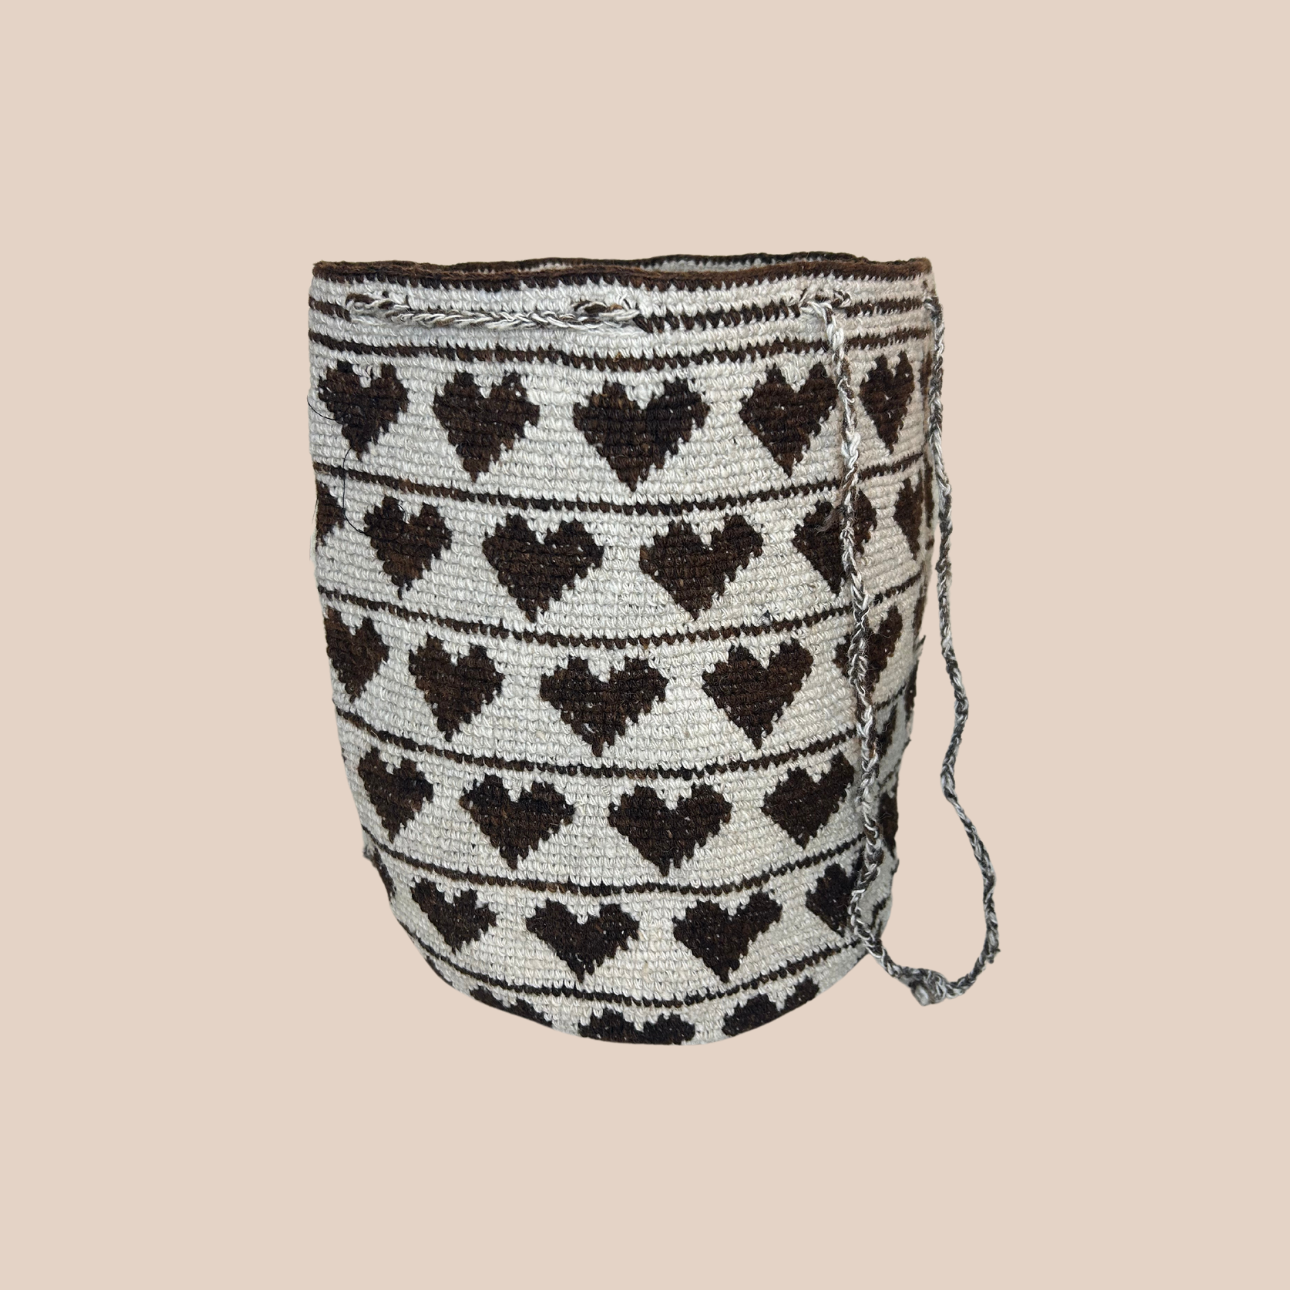 Image du sac AMOUR de Maison Badigo, un sac avec motifs coeurs, fabriqué 100% a partir de laine naturelle crochetée